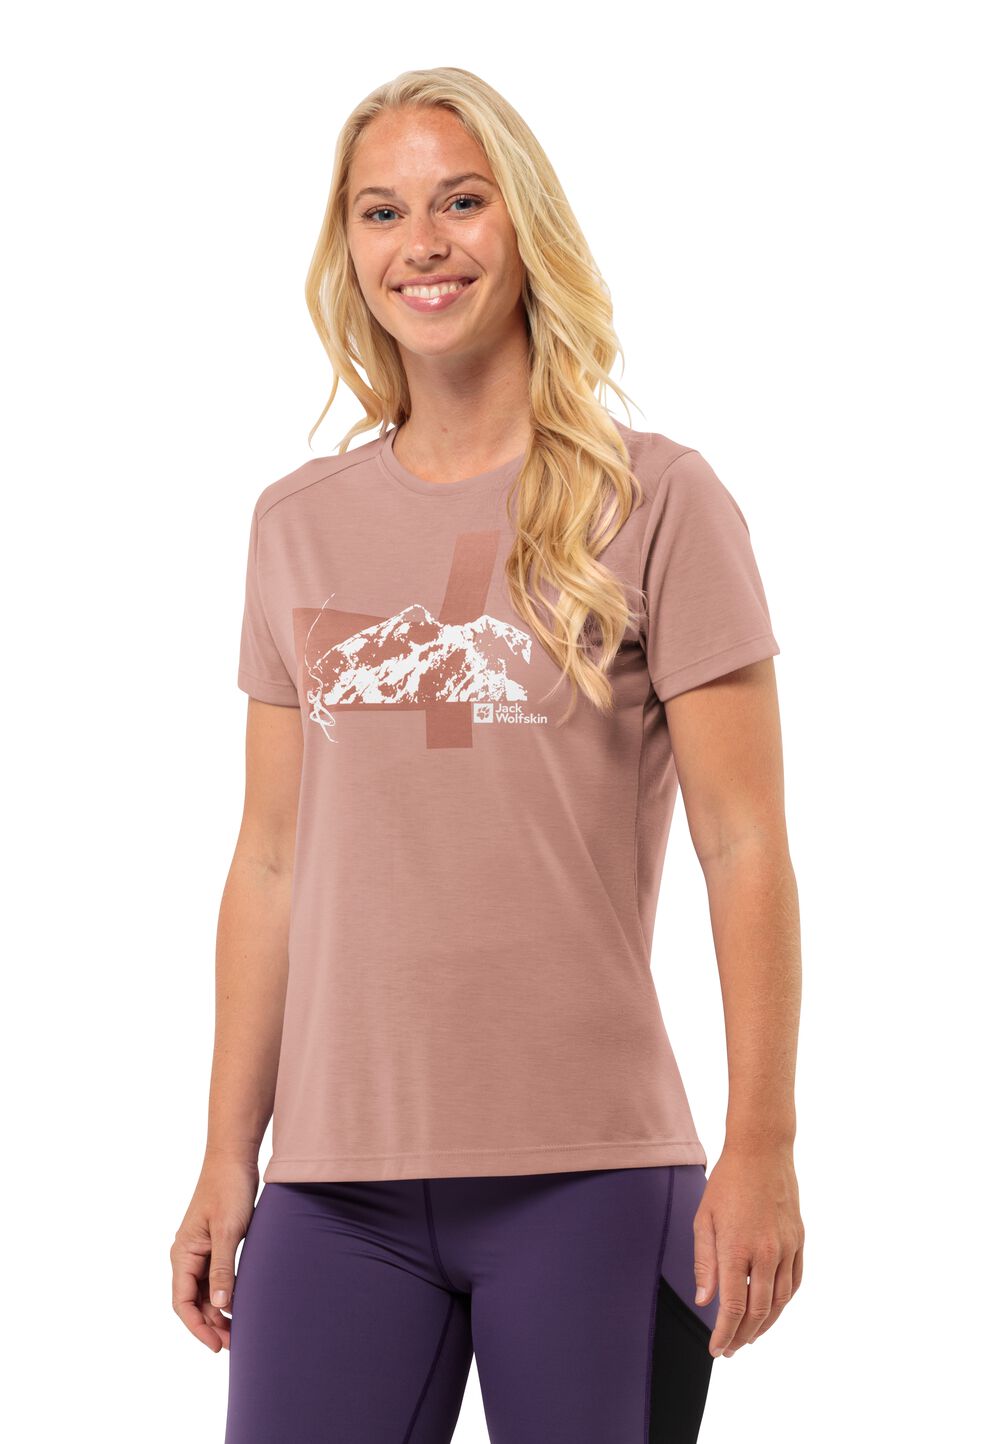 Jack Wolfskin Vonnan S S Graphic T-Shirt Women Functioneel shirt Dames XXL bruin rose dawn